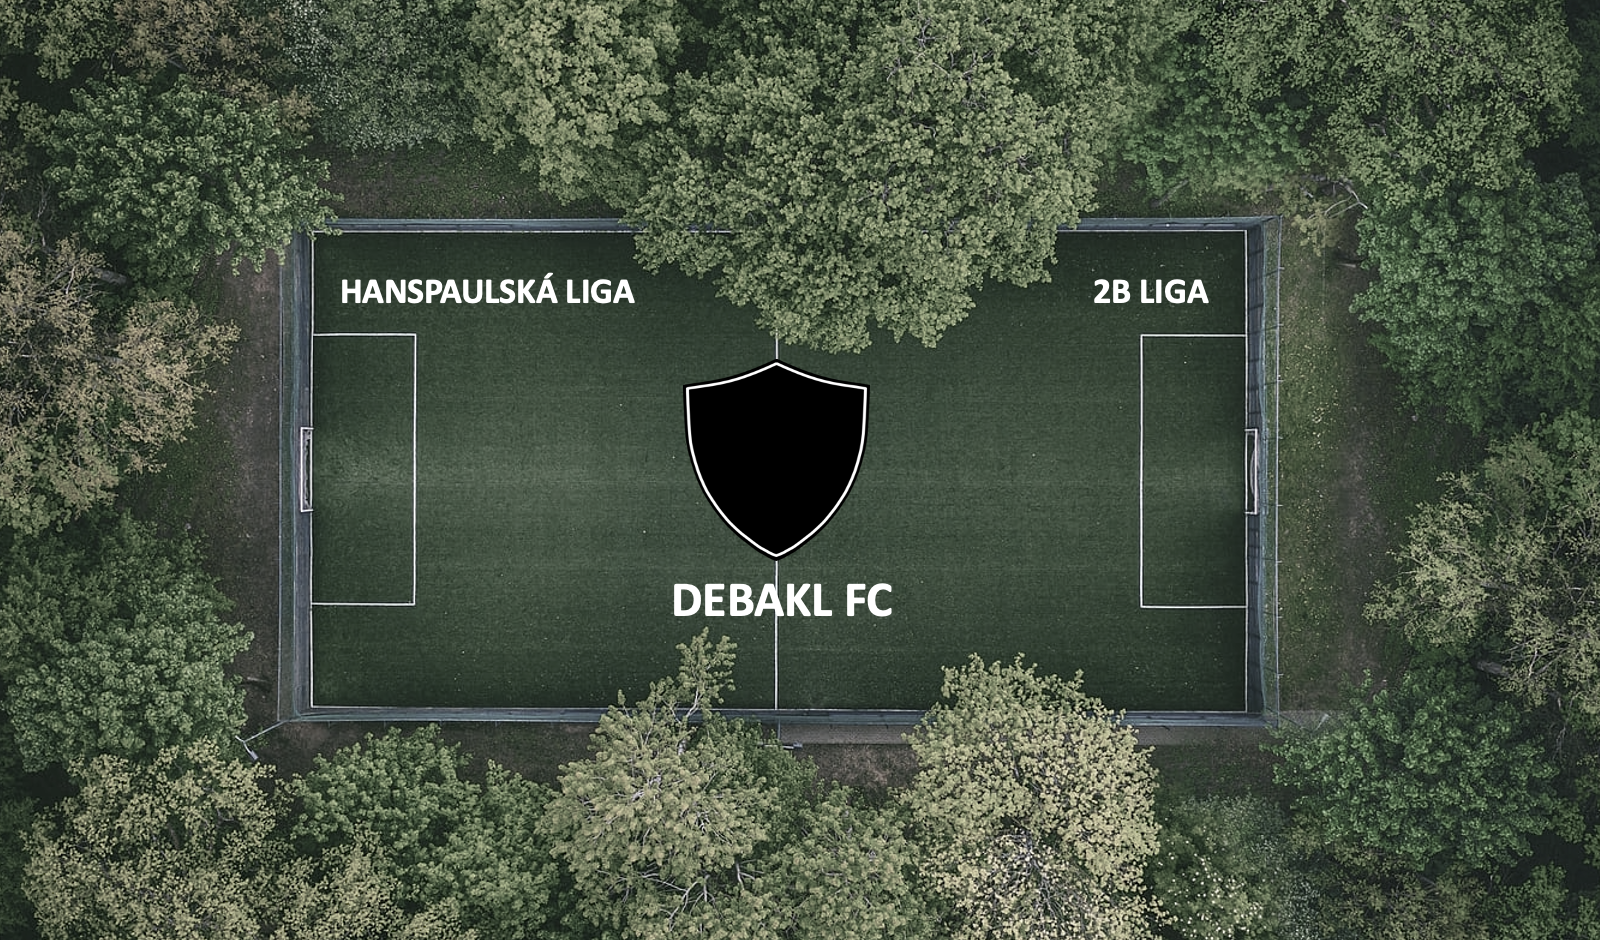 Debakel FC